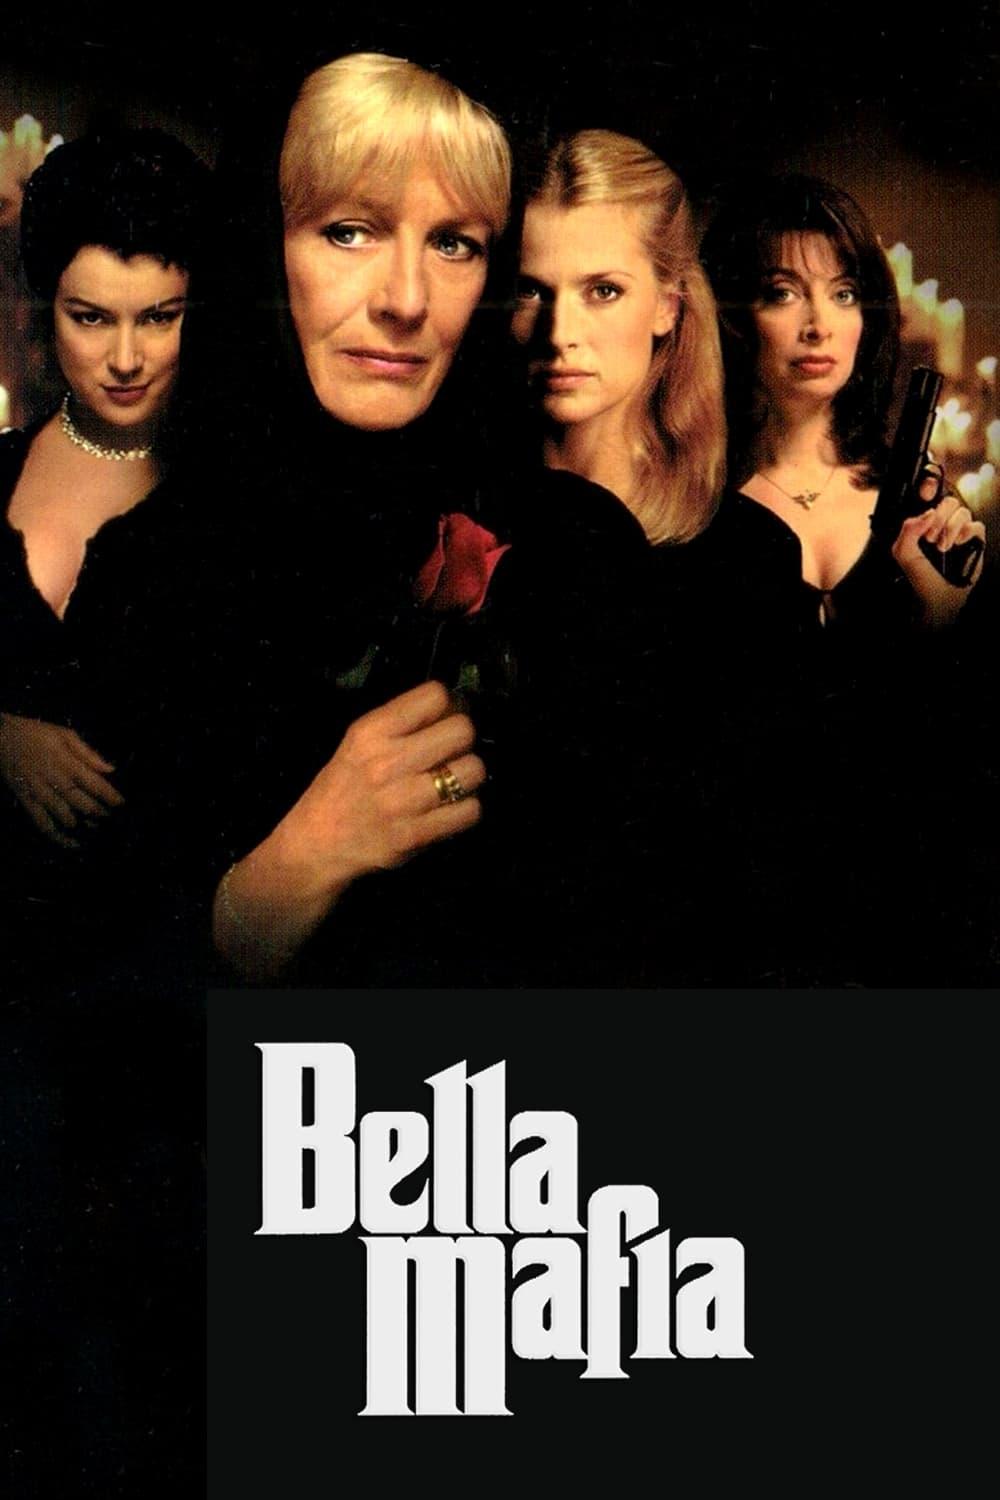 Bella Mafia poster